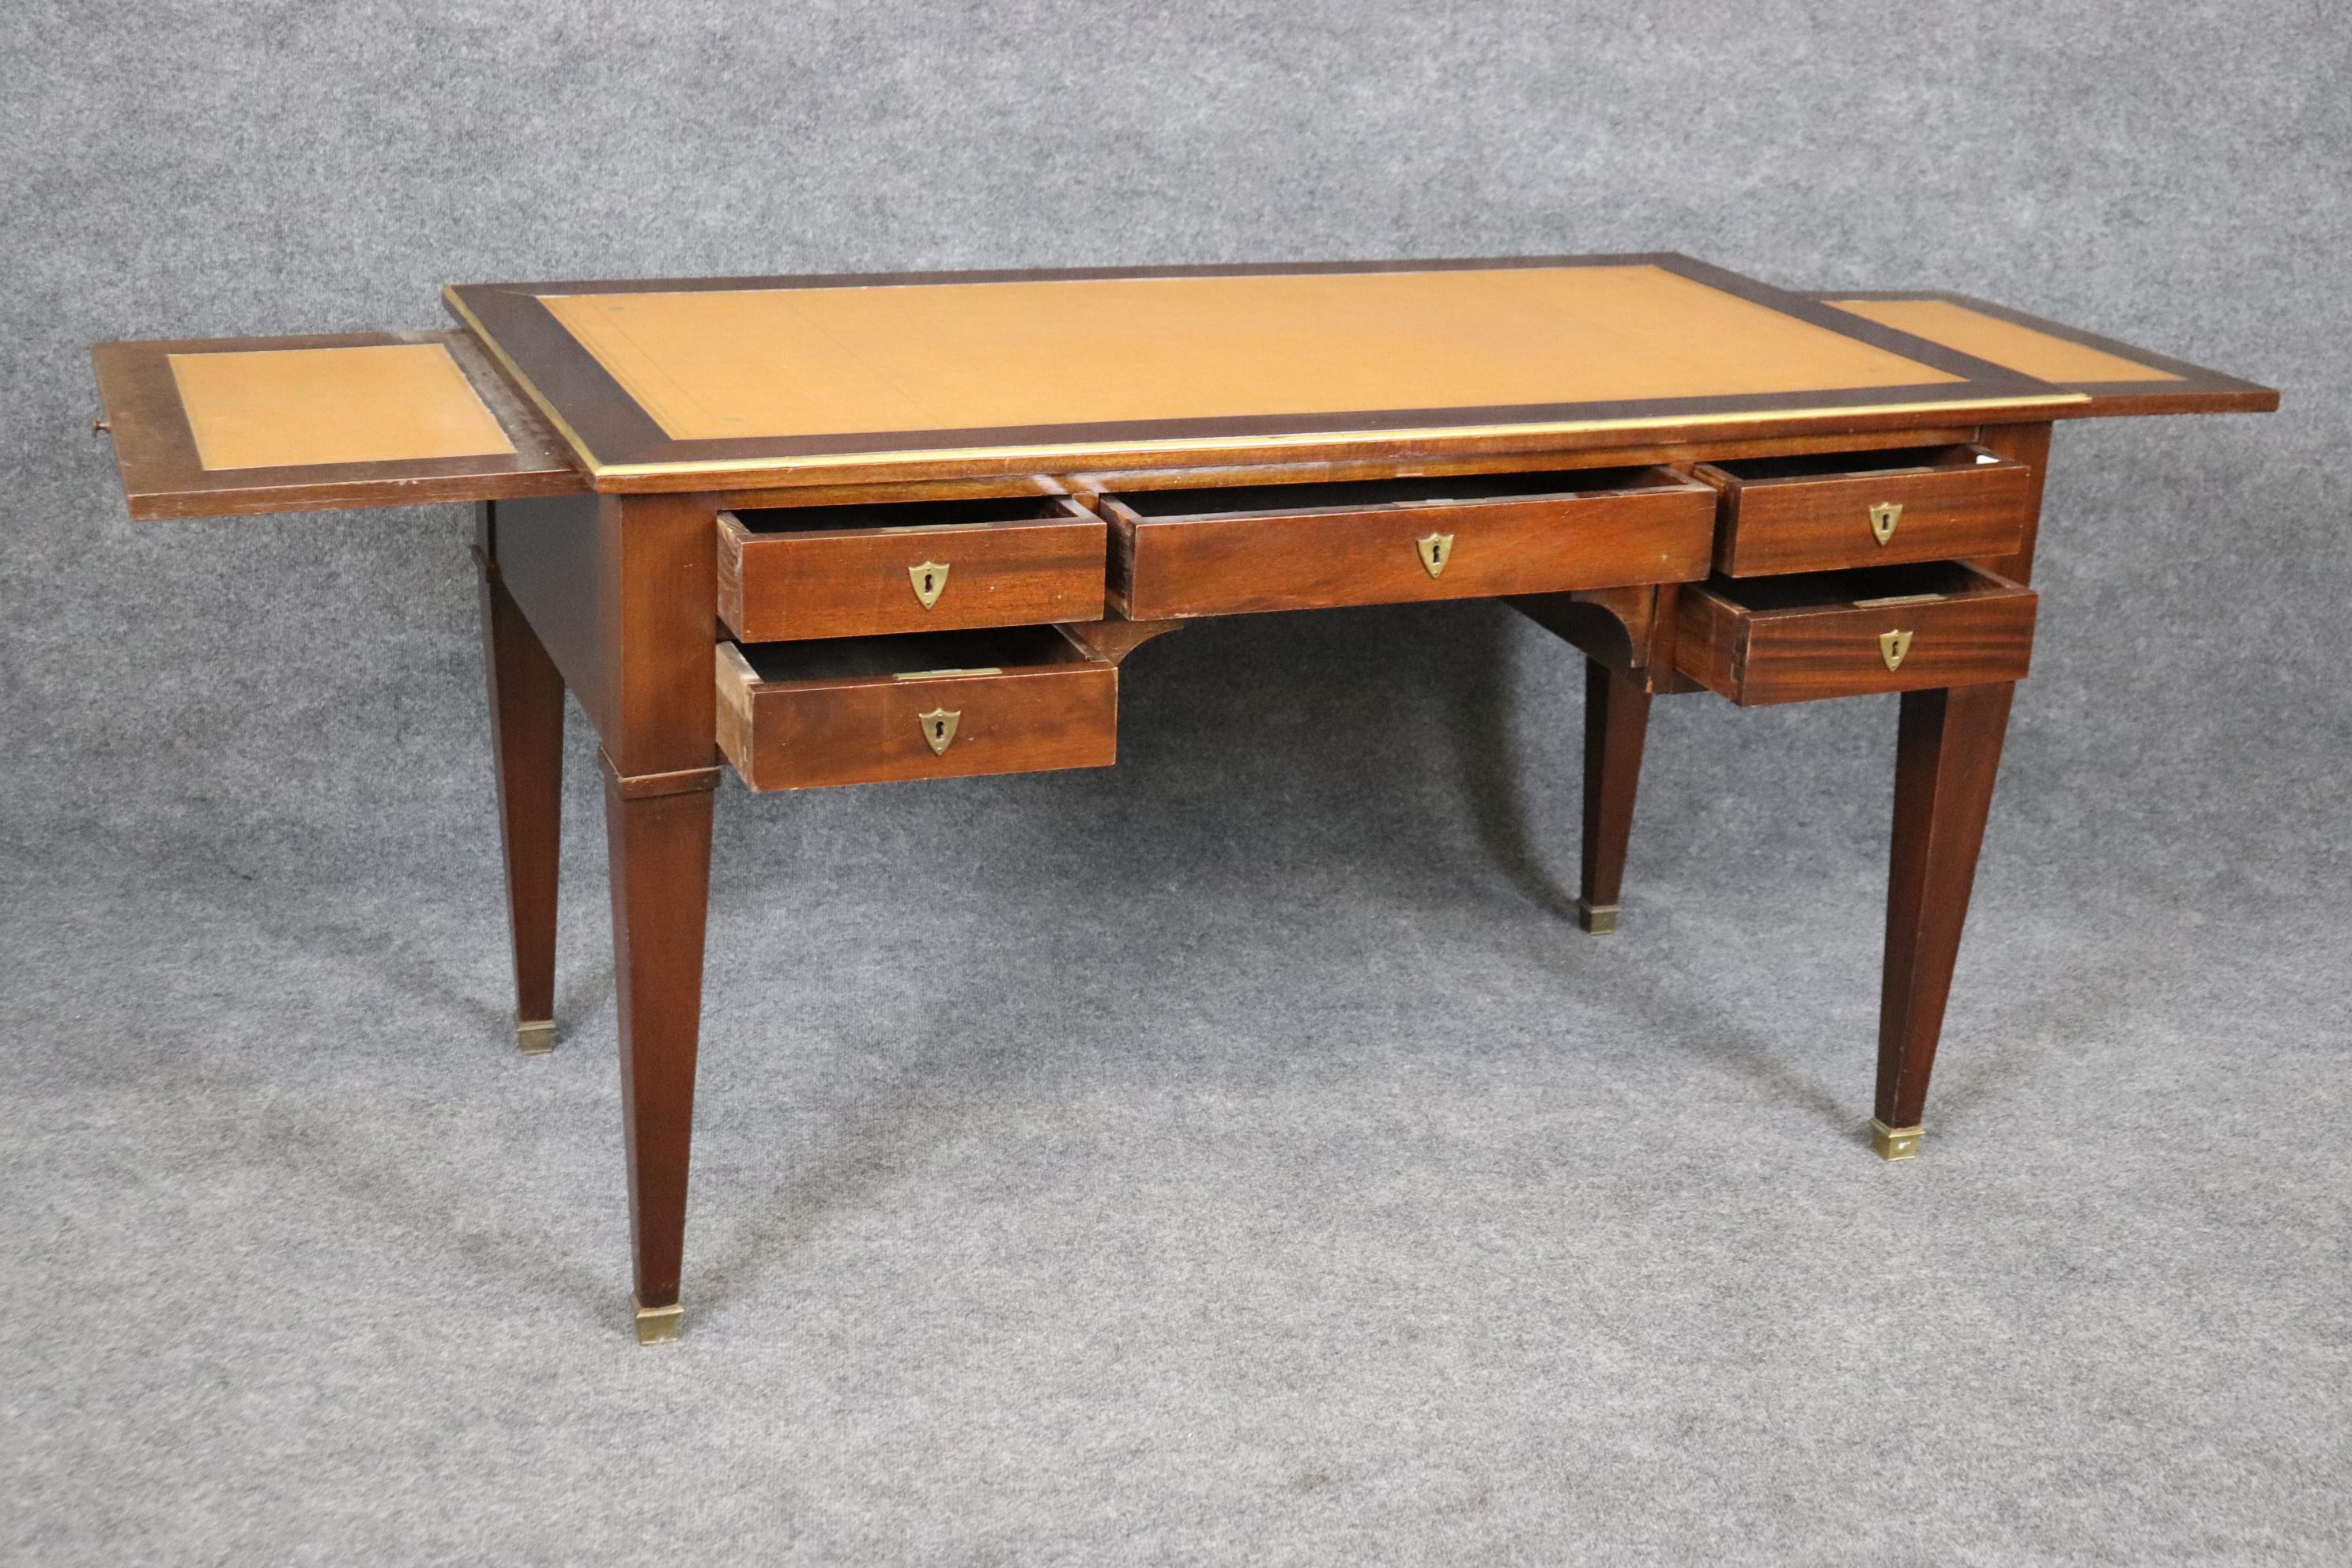 Dies ist ein sehr guter französischer Mahagoni-Directoire-Schreibtisch mit Bronze-Ormolu und zurückhaltendem und einfachem Design. Die Lederplatte ist in gutem antiken Zustand mit einigen Alters- und Gebrauchsspuren, aber nichts Verrücktes oder